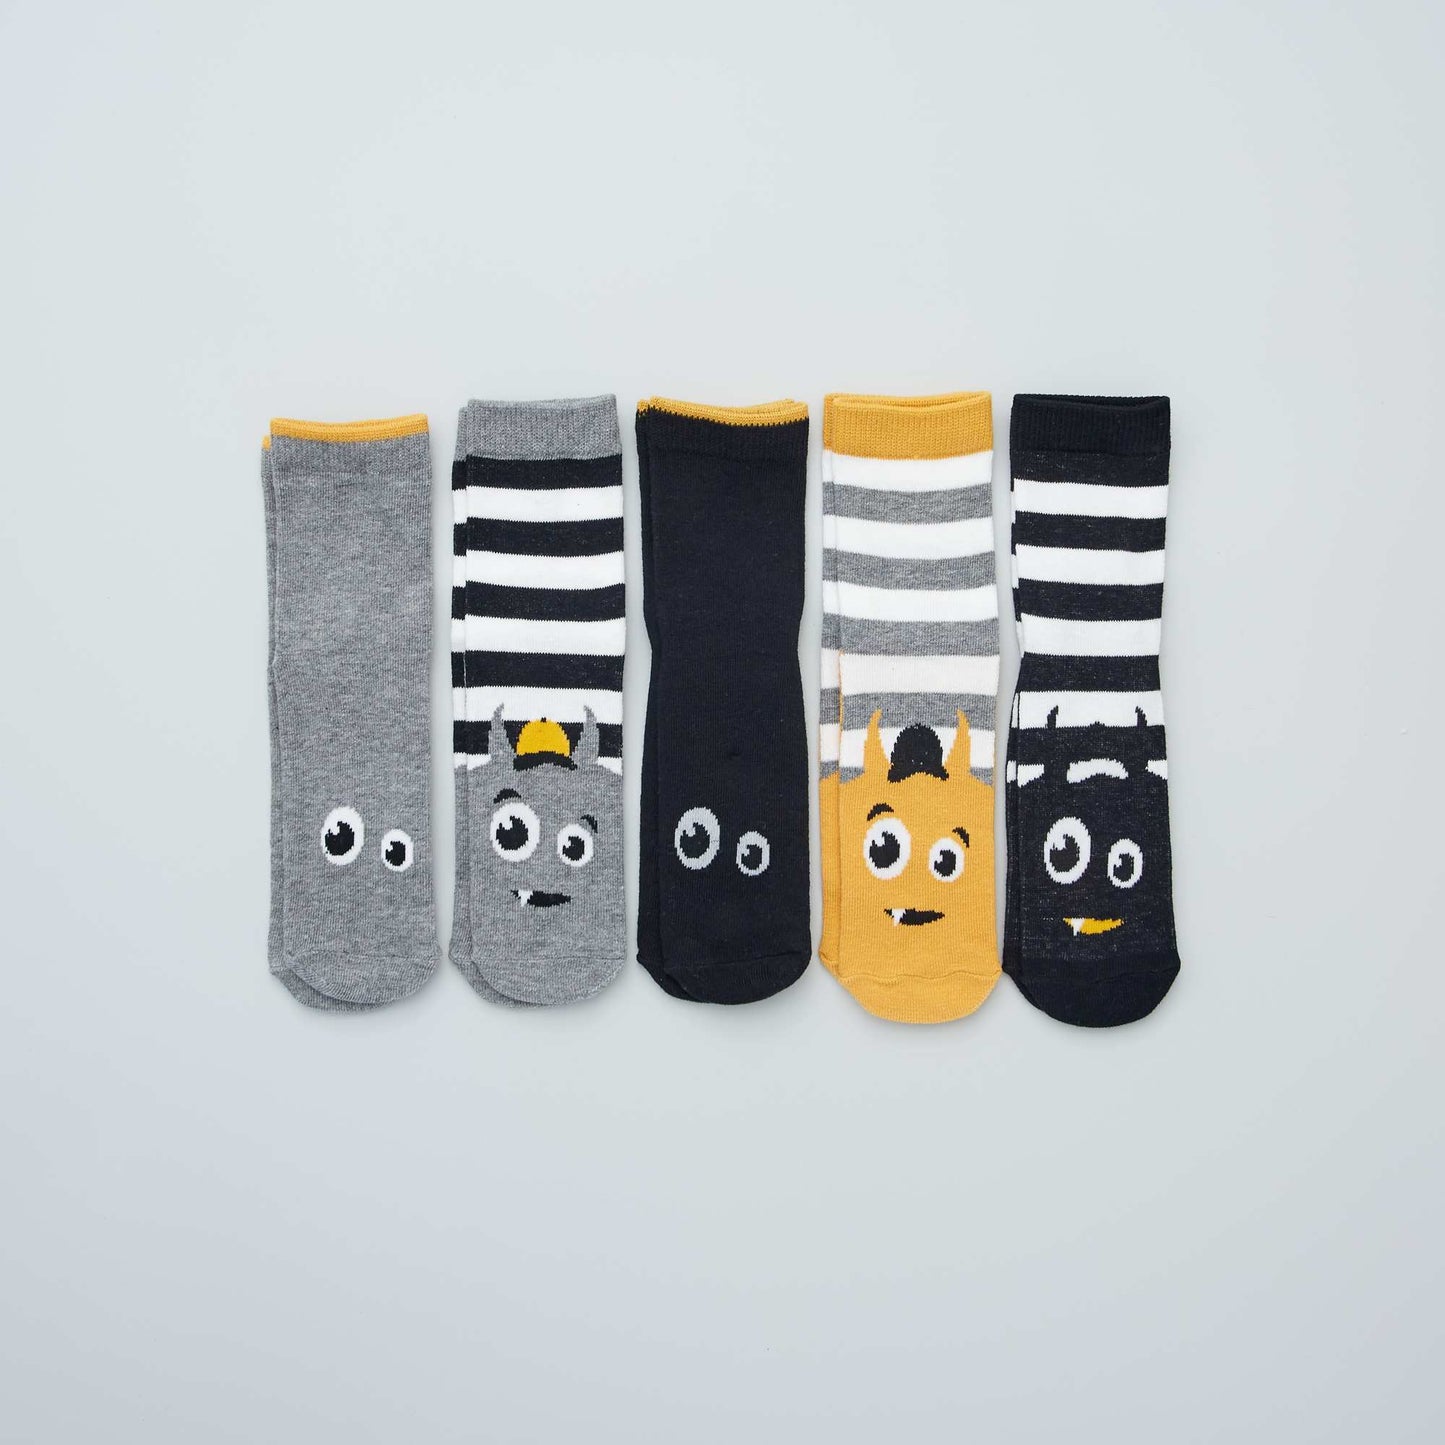 Chaussettes avec imprimés fantaisie - Lot de 5 noir/gris/jaune